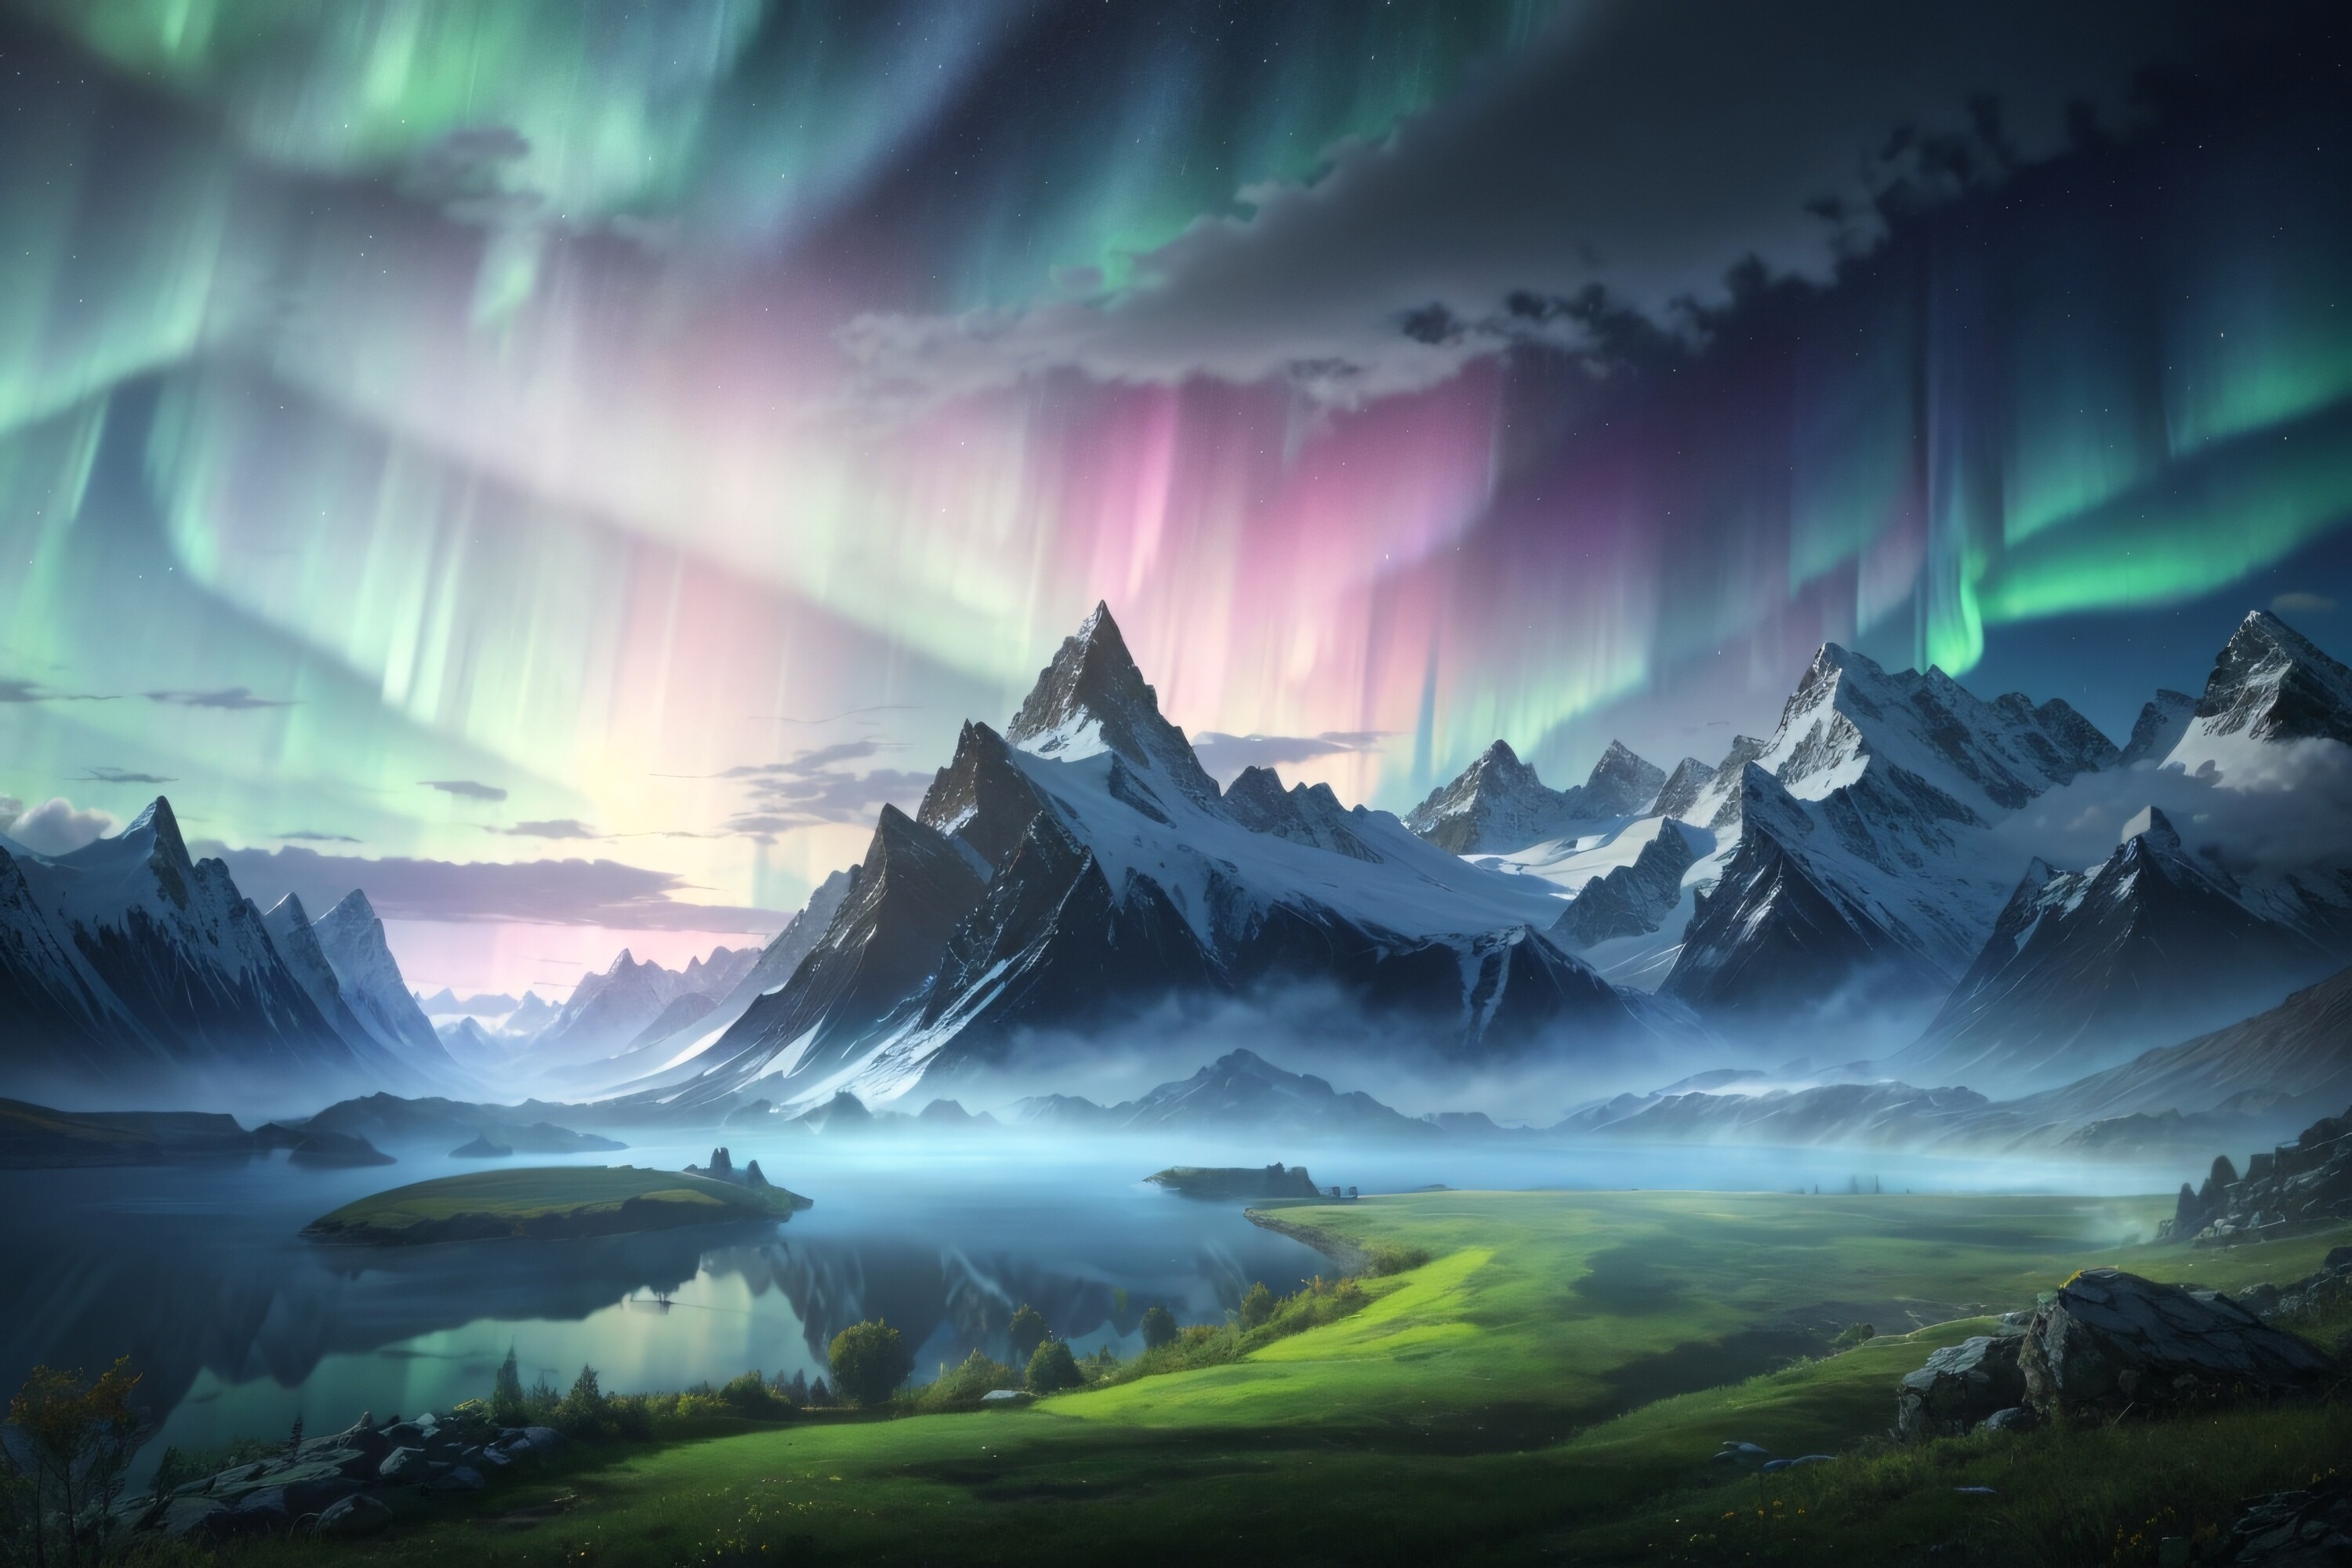 Aurora Landscape Background Graphic by Forhadx5 · Creative Fabrica